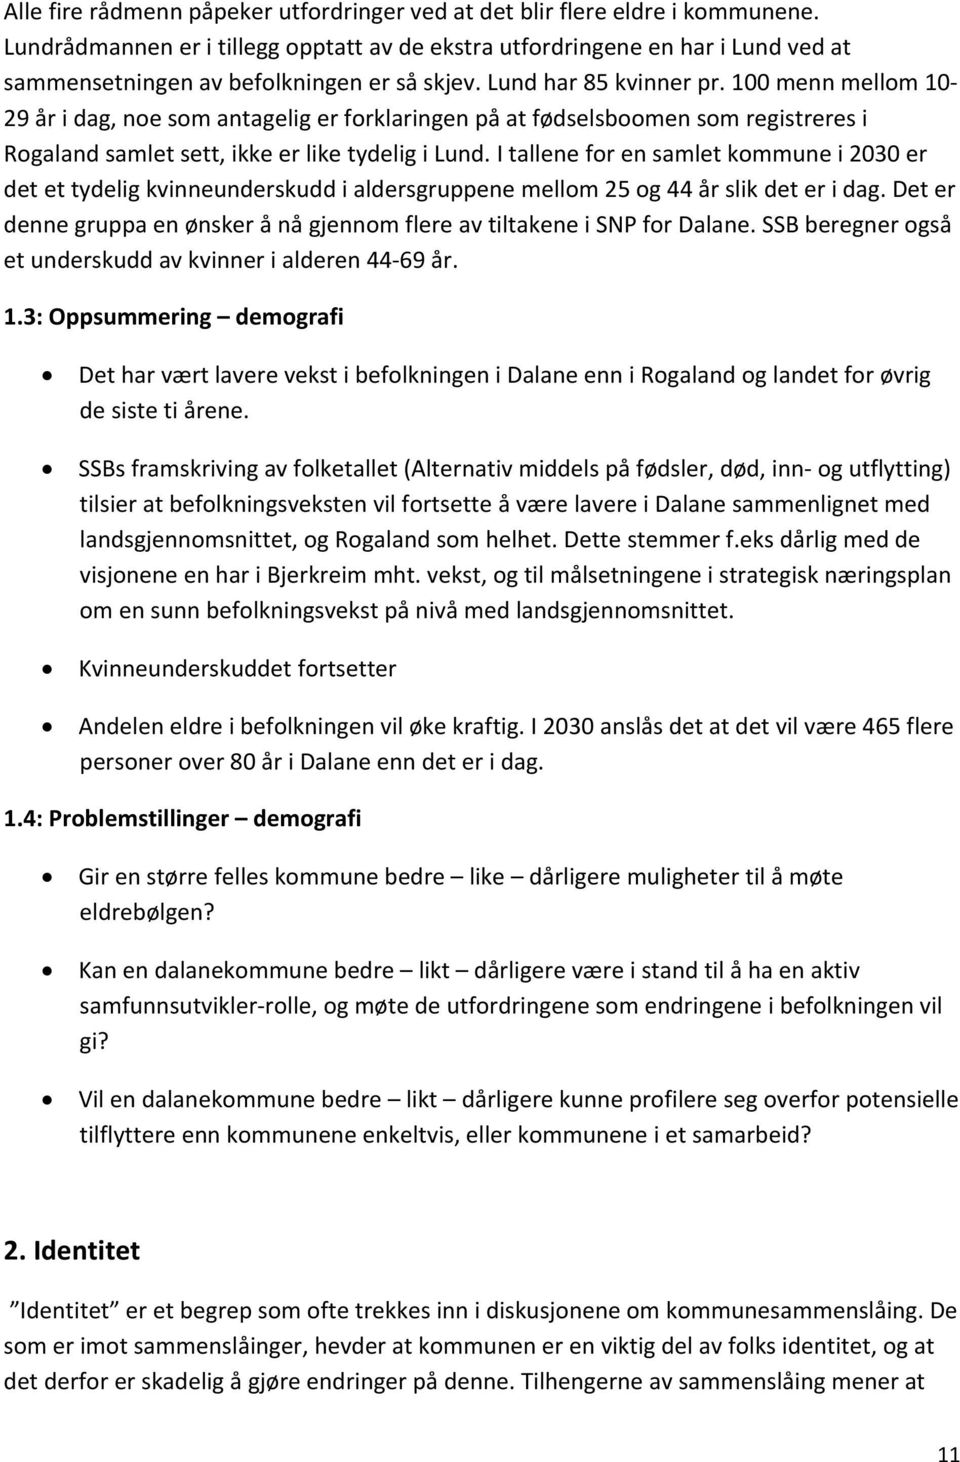 100 menn mellom 10 29 år i dag, noe som antagelig er forklaringen på at fødselsboomen som registreres i Rogaland samlet sett, ikke er like tydelig i Lund.